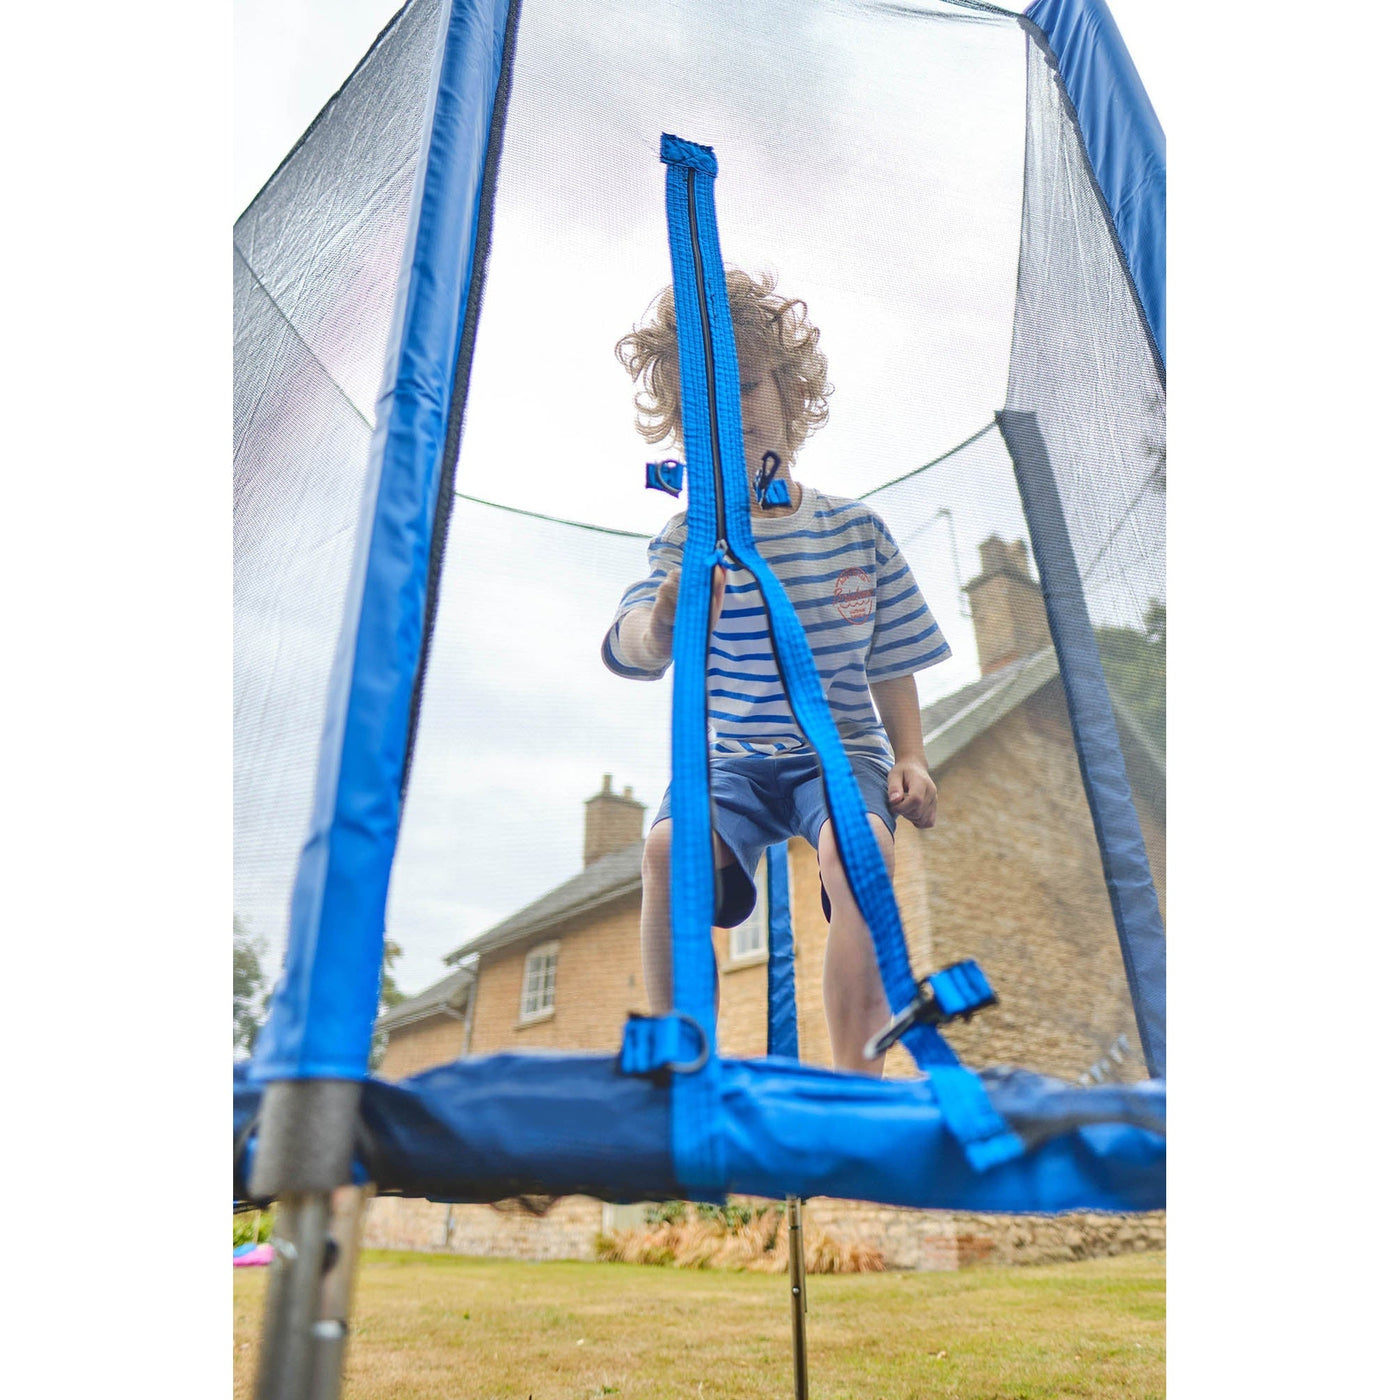 Plum® 6ft Junior Trampoline & Enclosure - Blue (PVC)